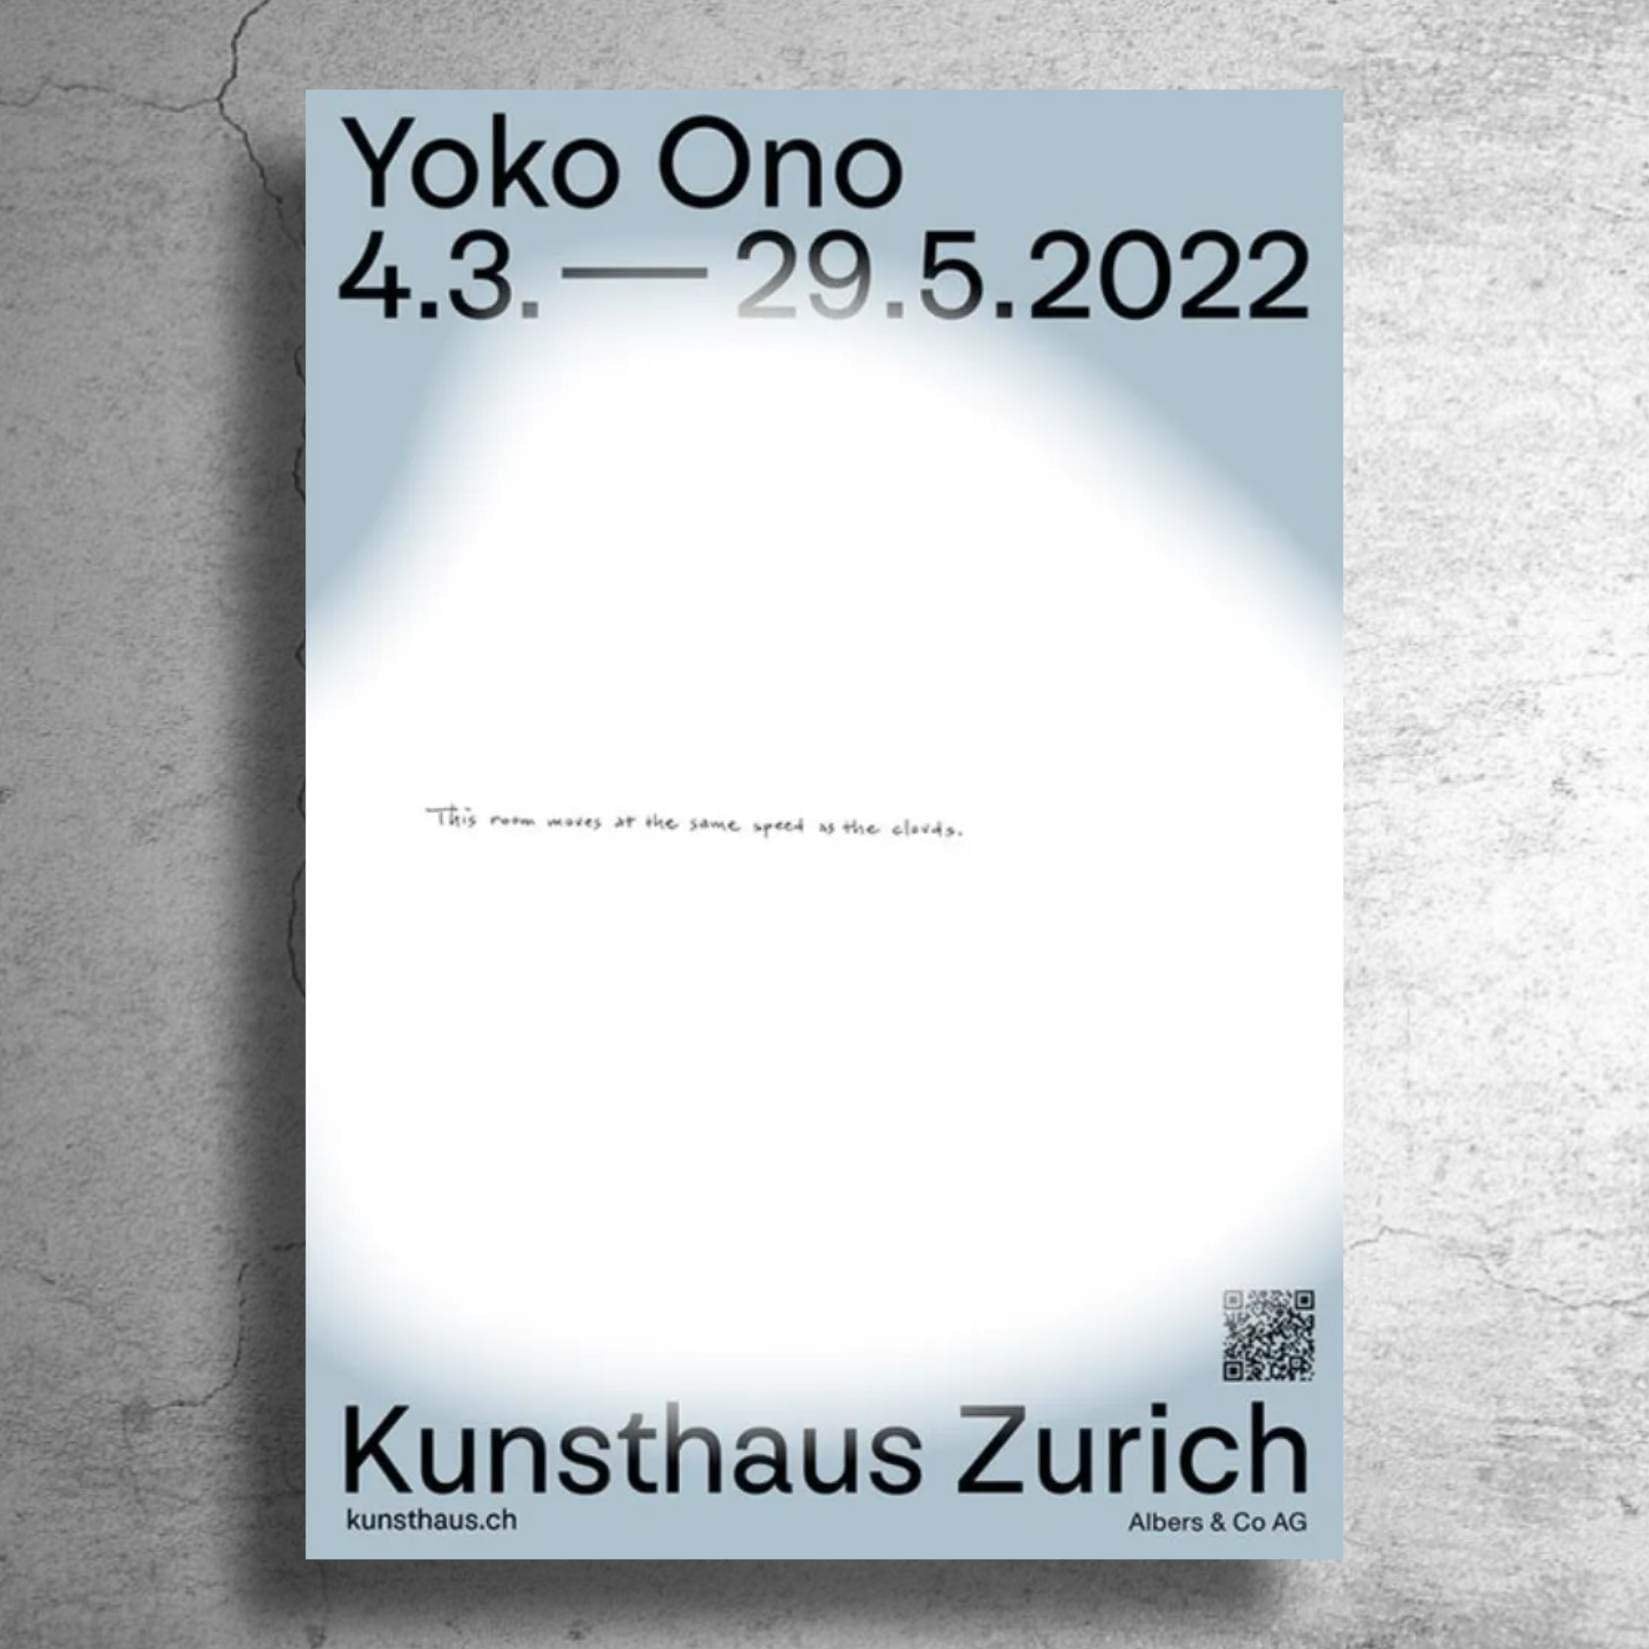 オノ・ヨーコ Yoko Ono』2022年スイスでの展示告知特大ポスター - 印刷物